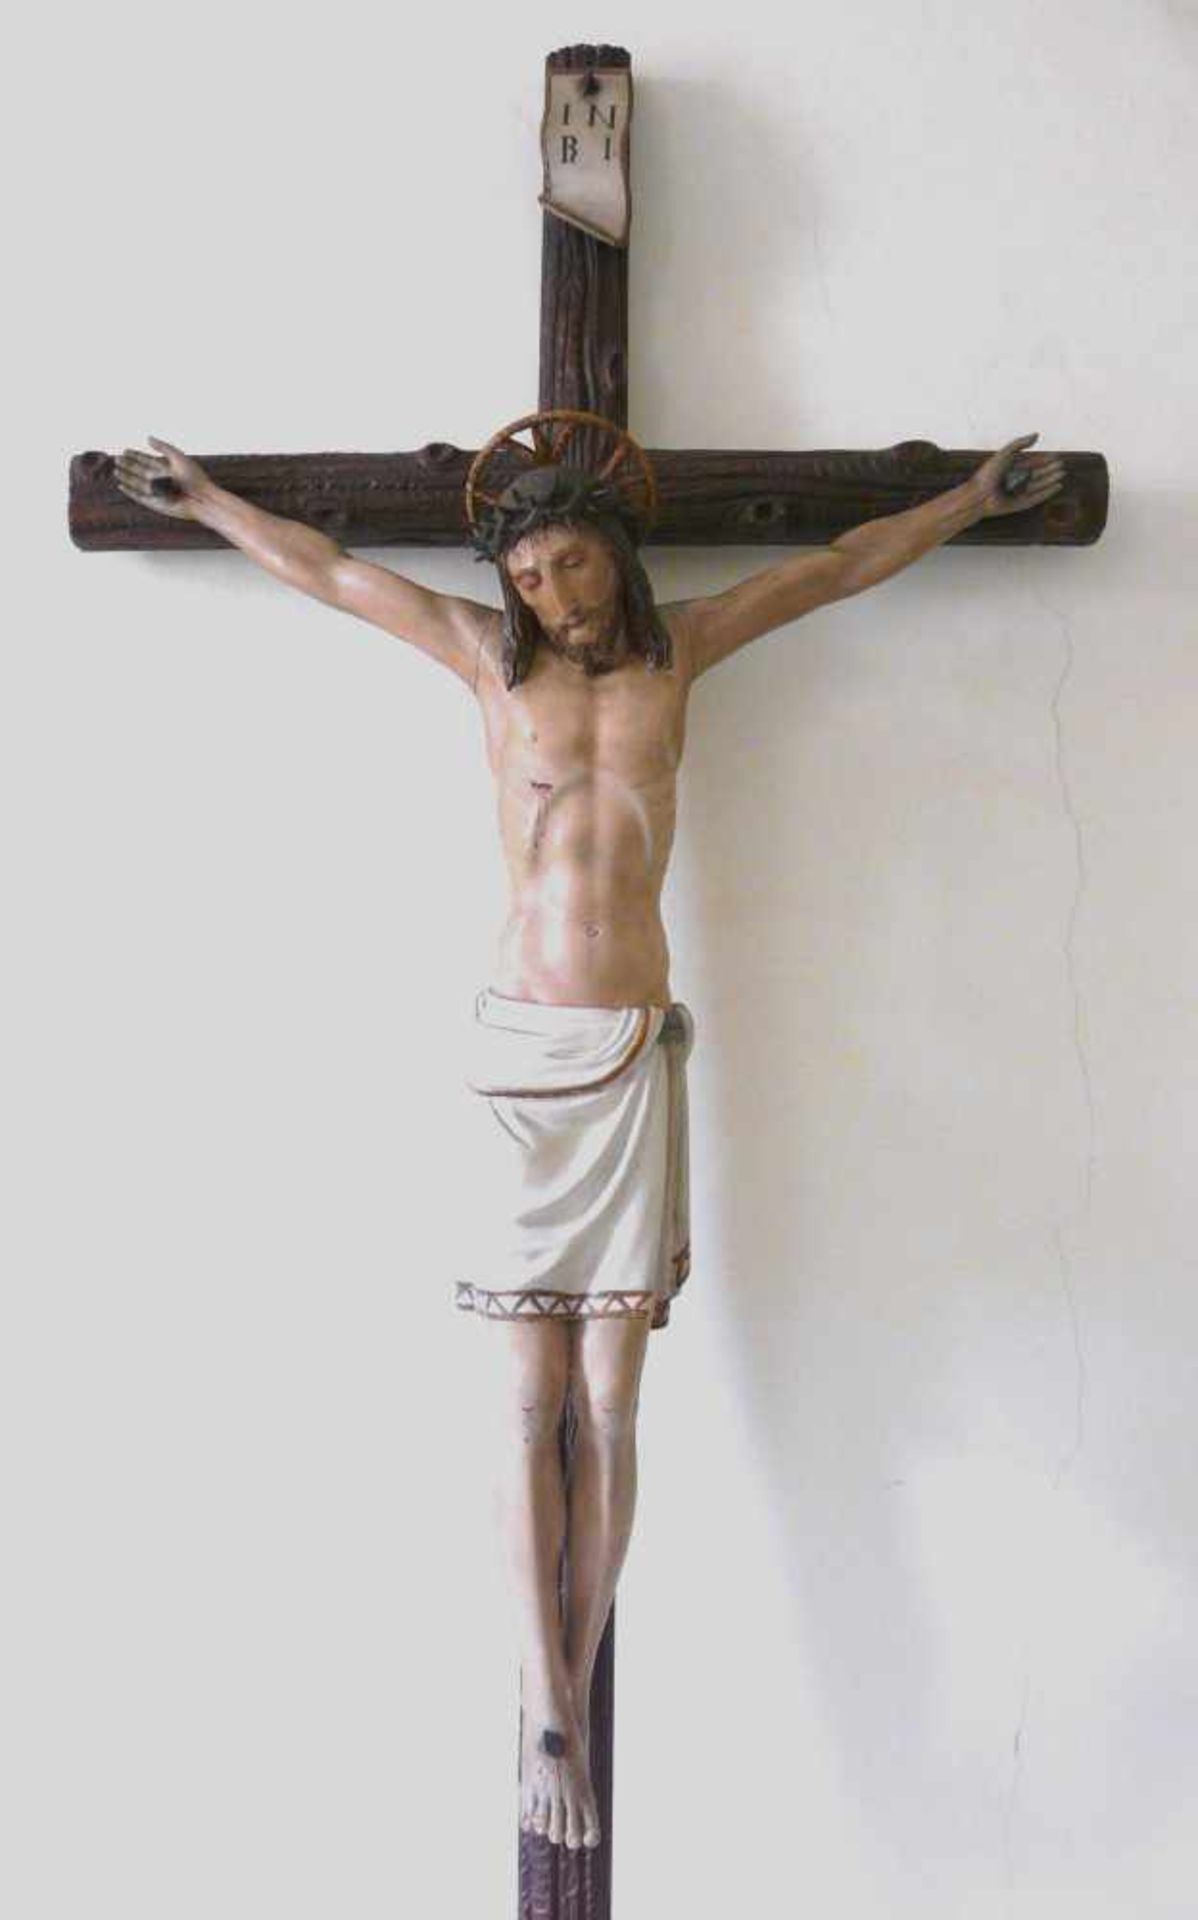 Kruzifix19. Jahrhundert. Holz, vollplastisch geschnitzt, farbig gefasst. Lateinisches Kreuz in - Bild 2 aus 2